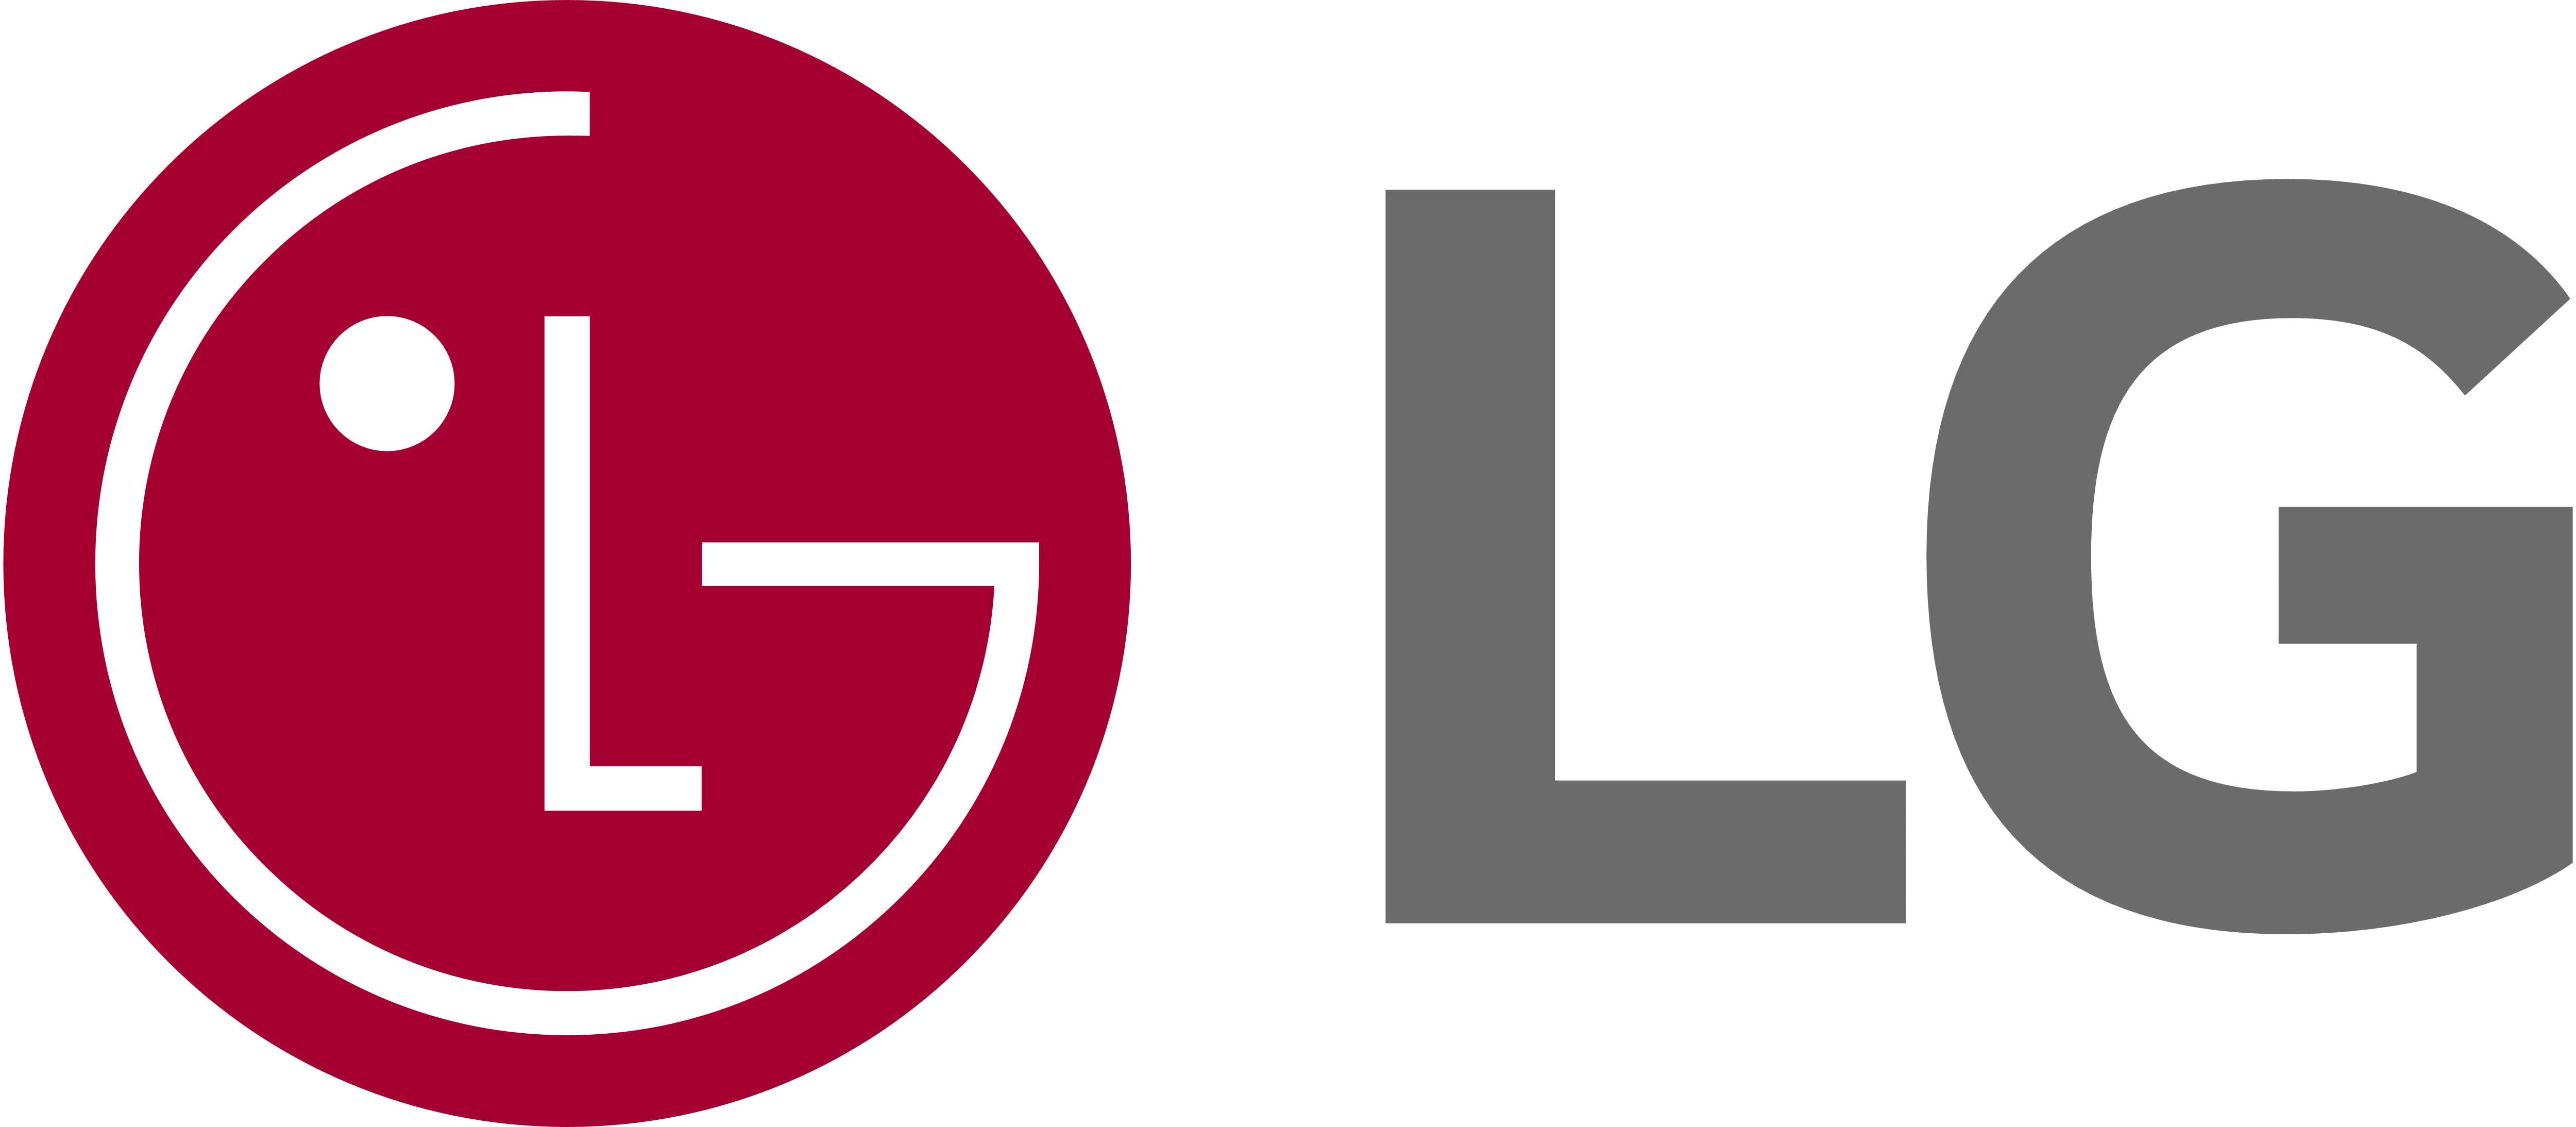 LG Stove Appliance Repair, Whirlpool Stove Range Repair